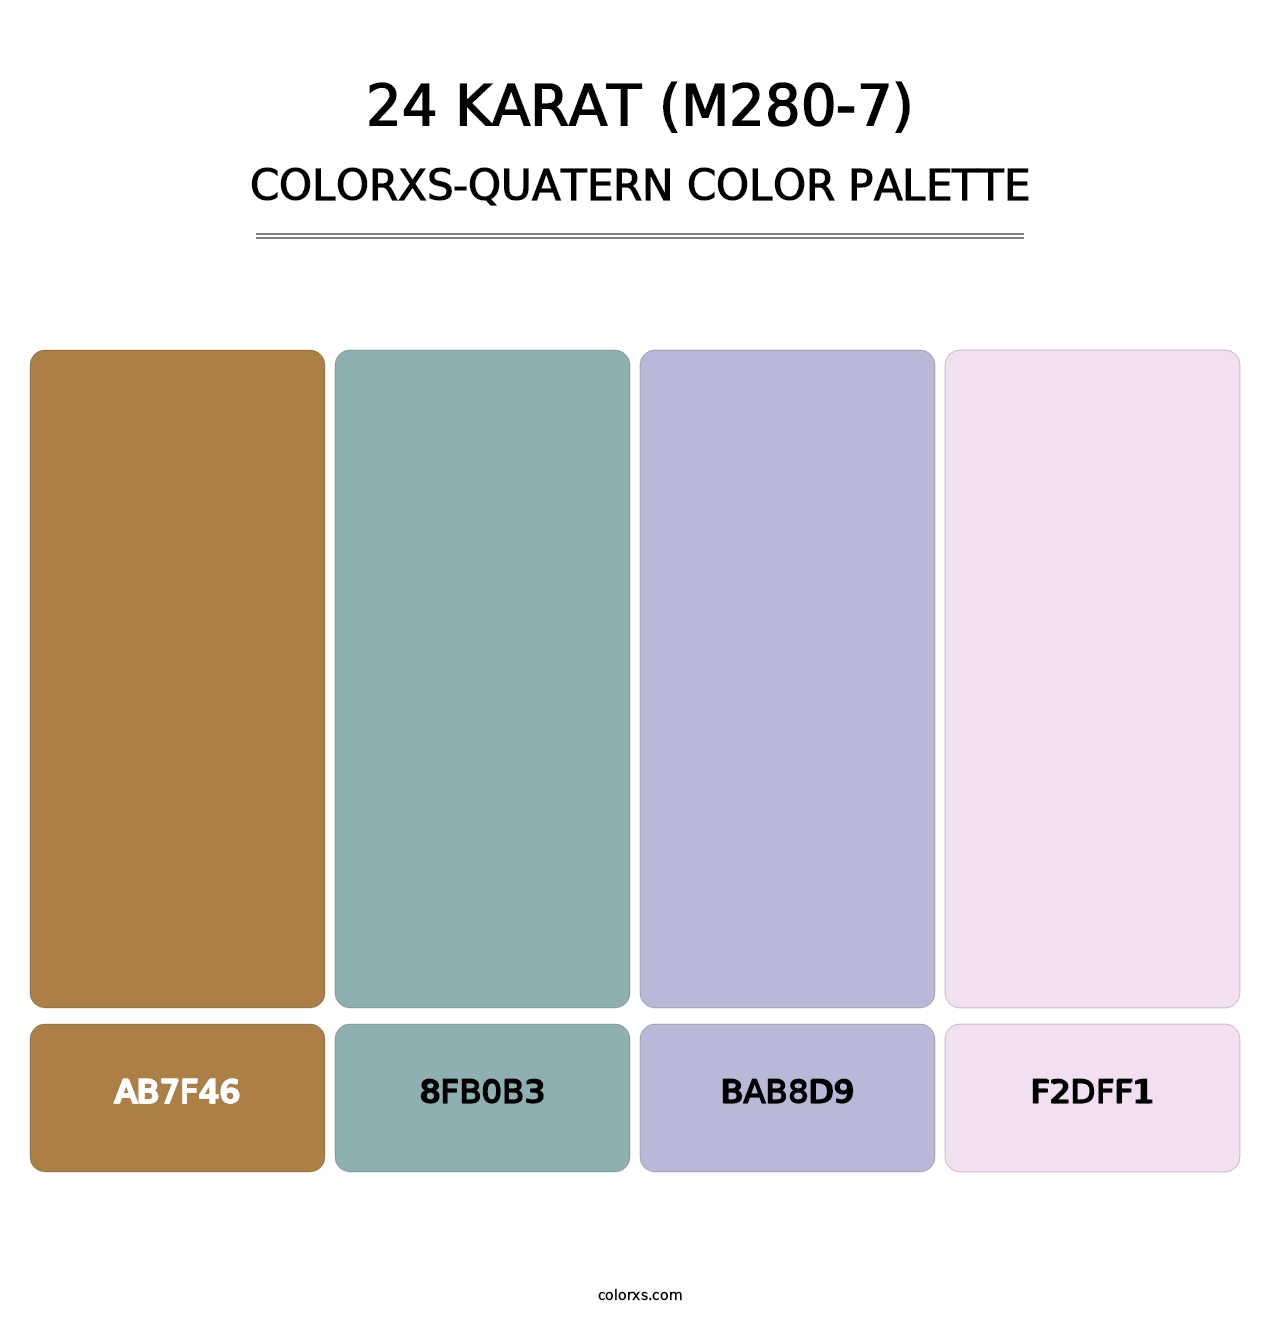 24 Karat (M280-7) - Colorxs Quatern Palette